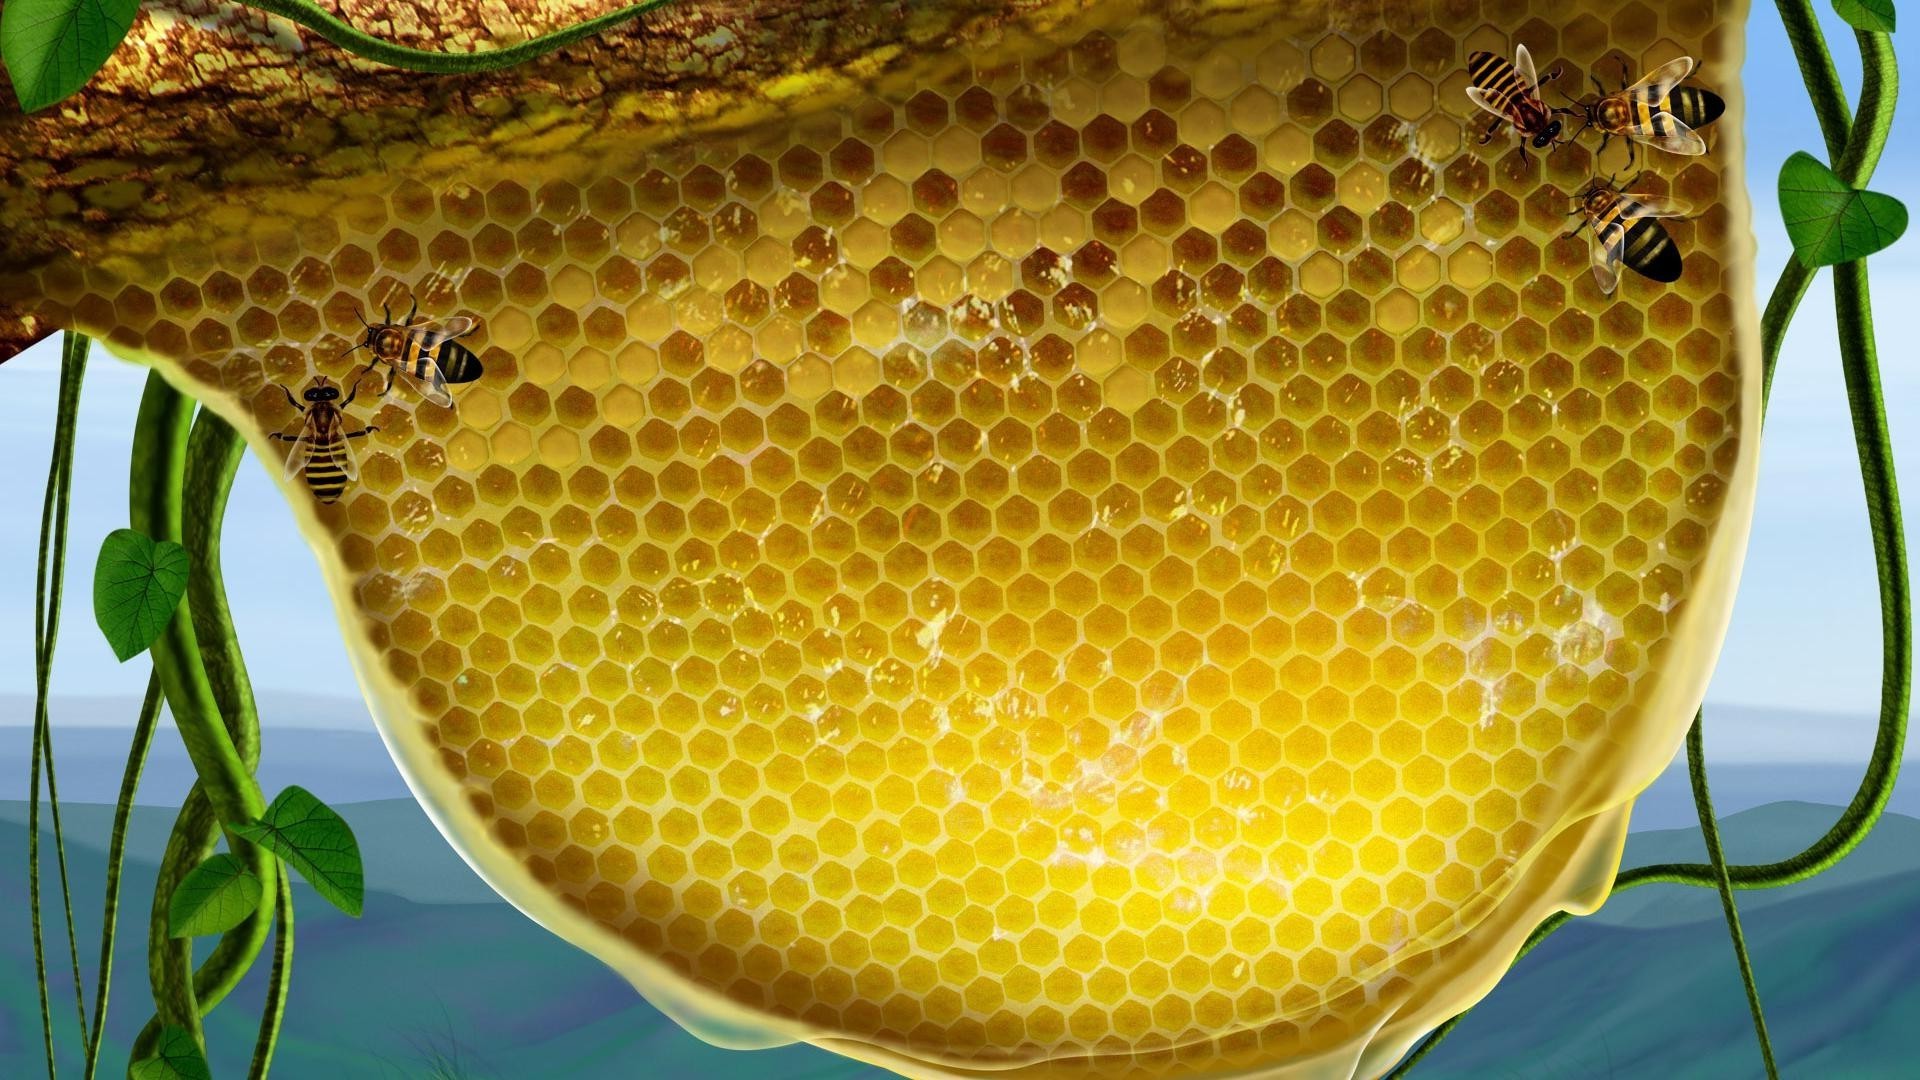 Фото пчелиной матки на фоне пчел